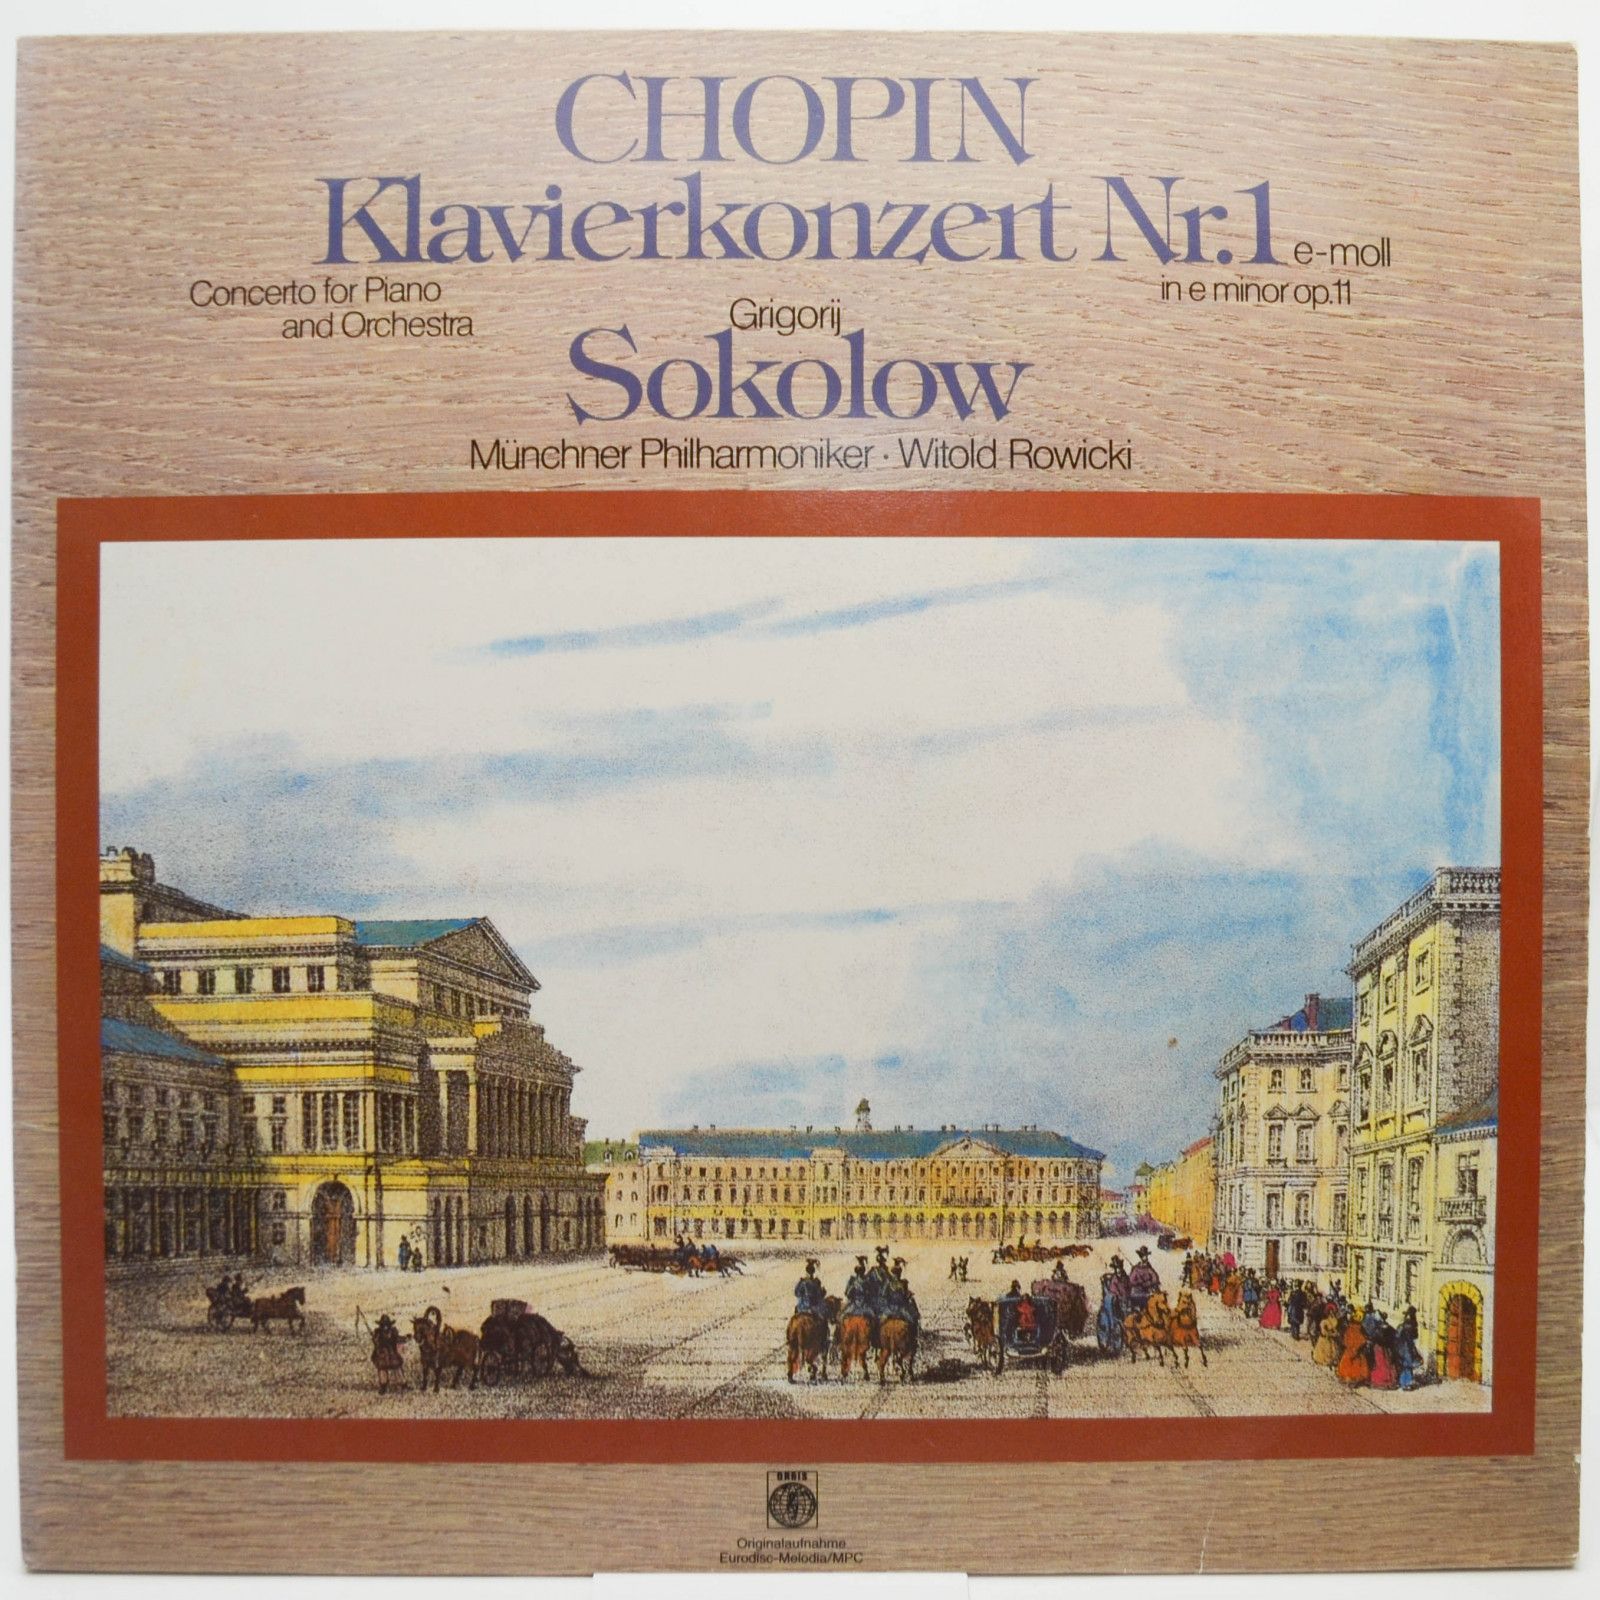 Chopin, Grigorij Sokolow, Münchner Philharmoniker, Witold Rowicki — Klavierkonzert Nr. 1 E-Moll = In E Minor Op. 11, 1978